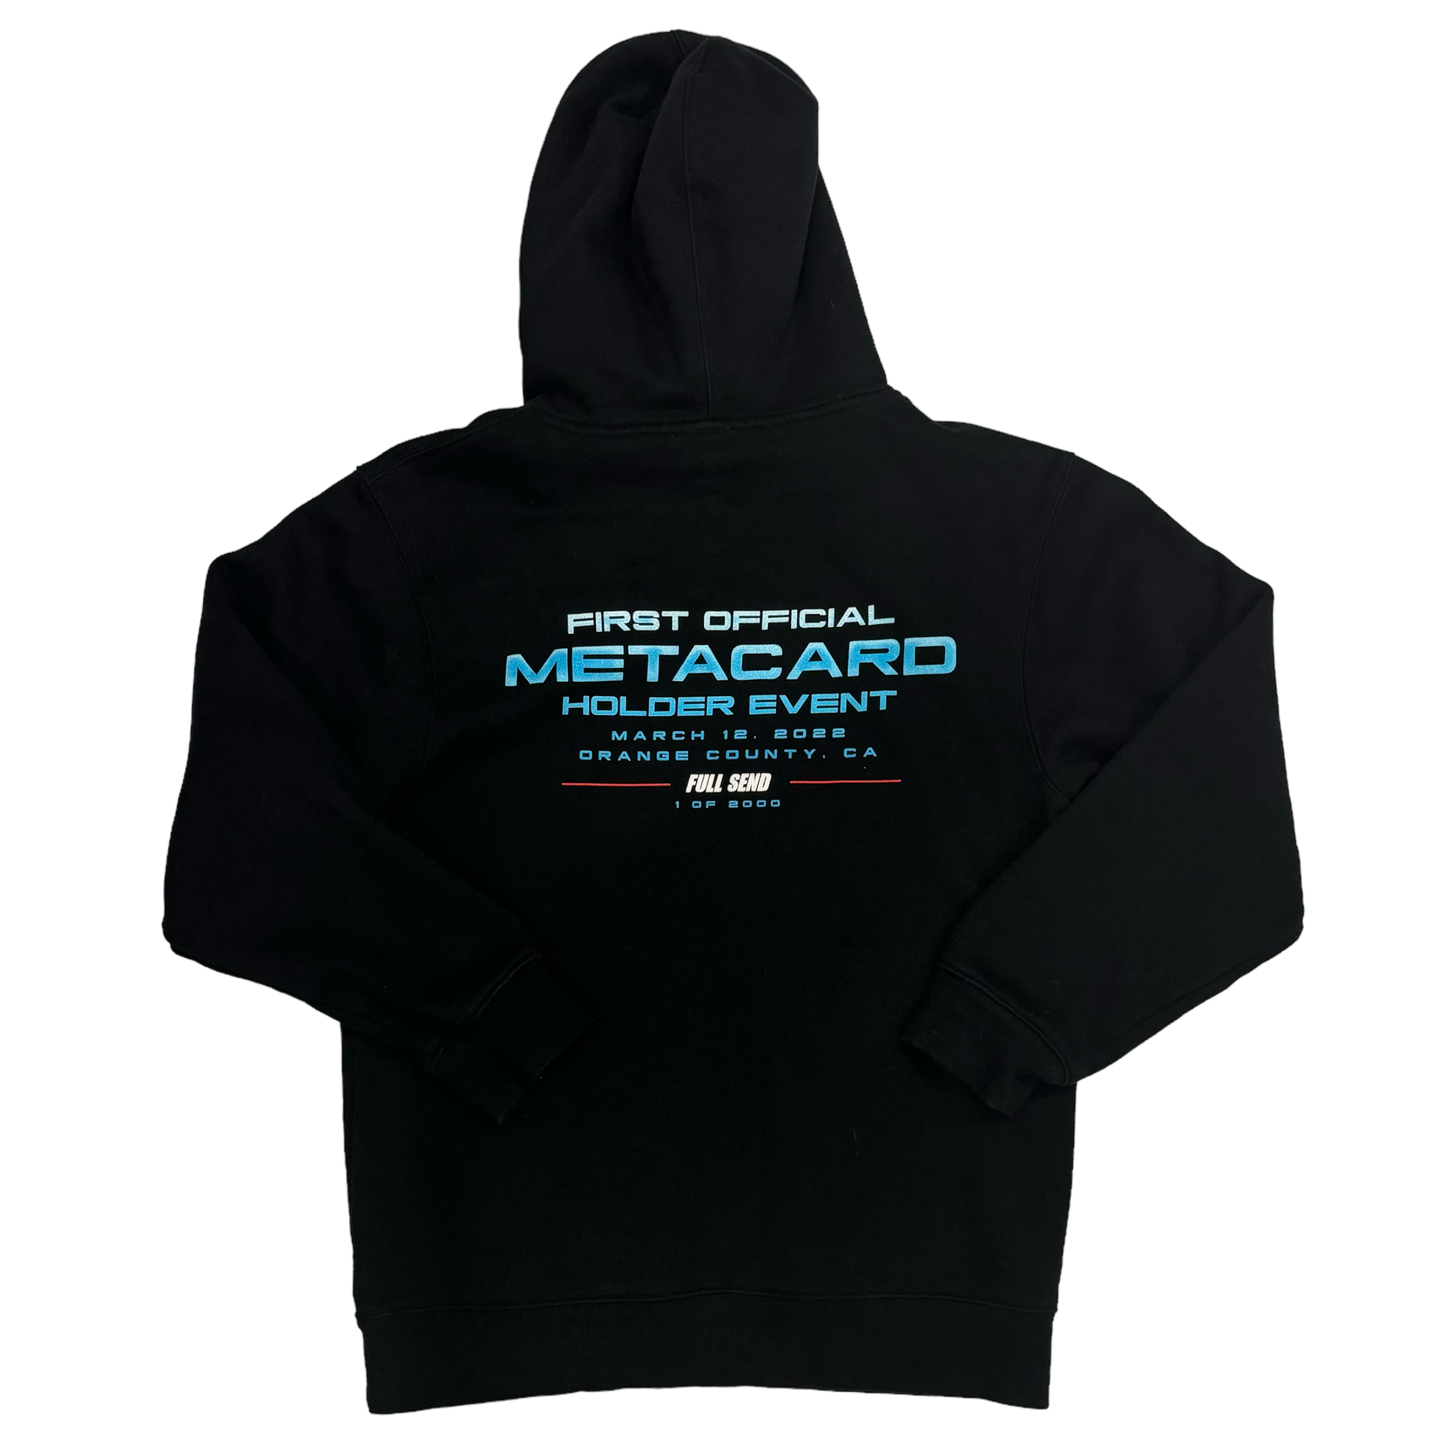 Full Send - Metacard Limited Edition /2000 Black Hoodie Sweatshirt